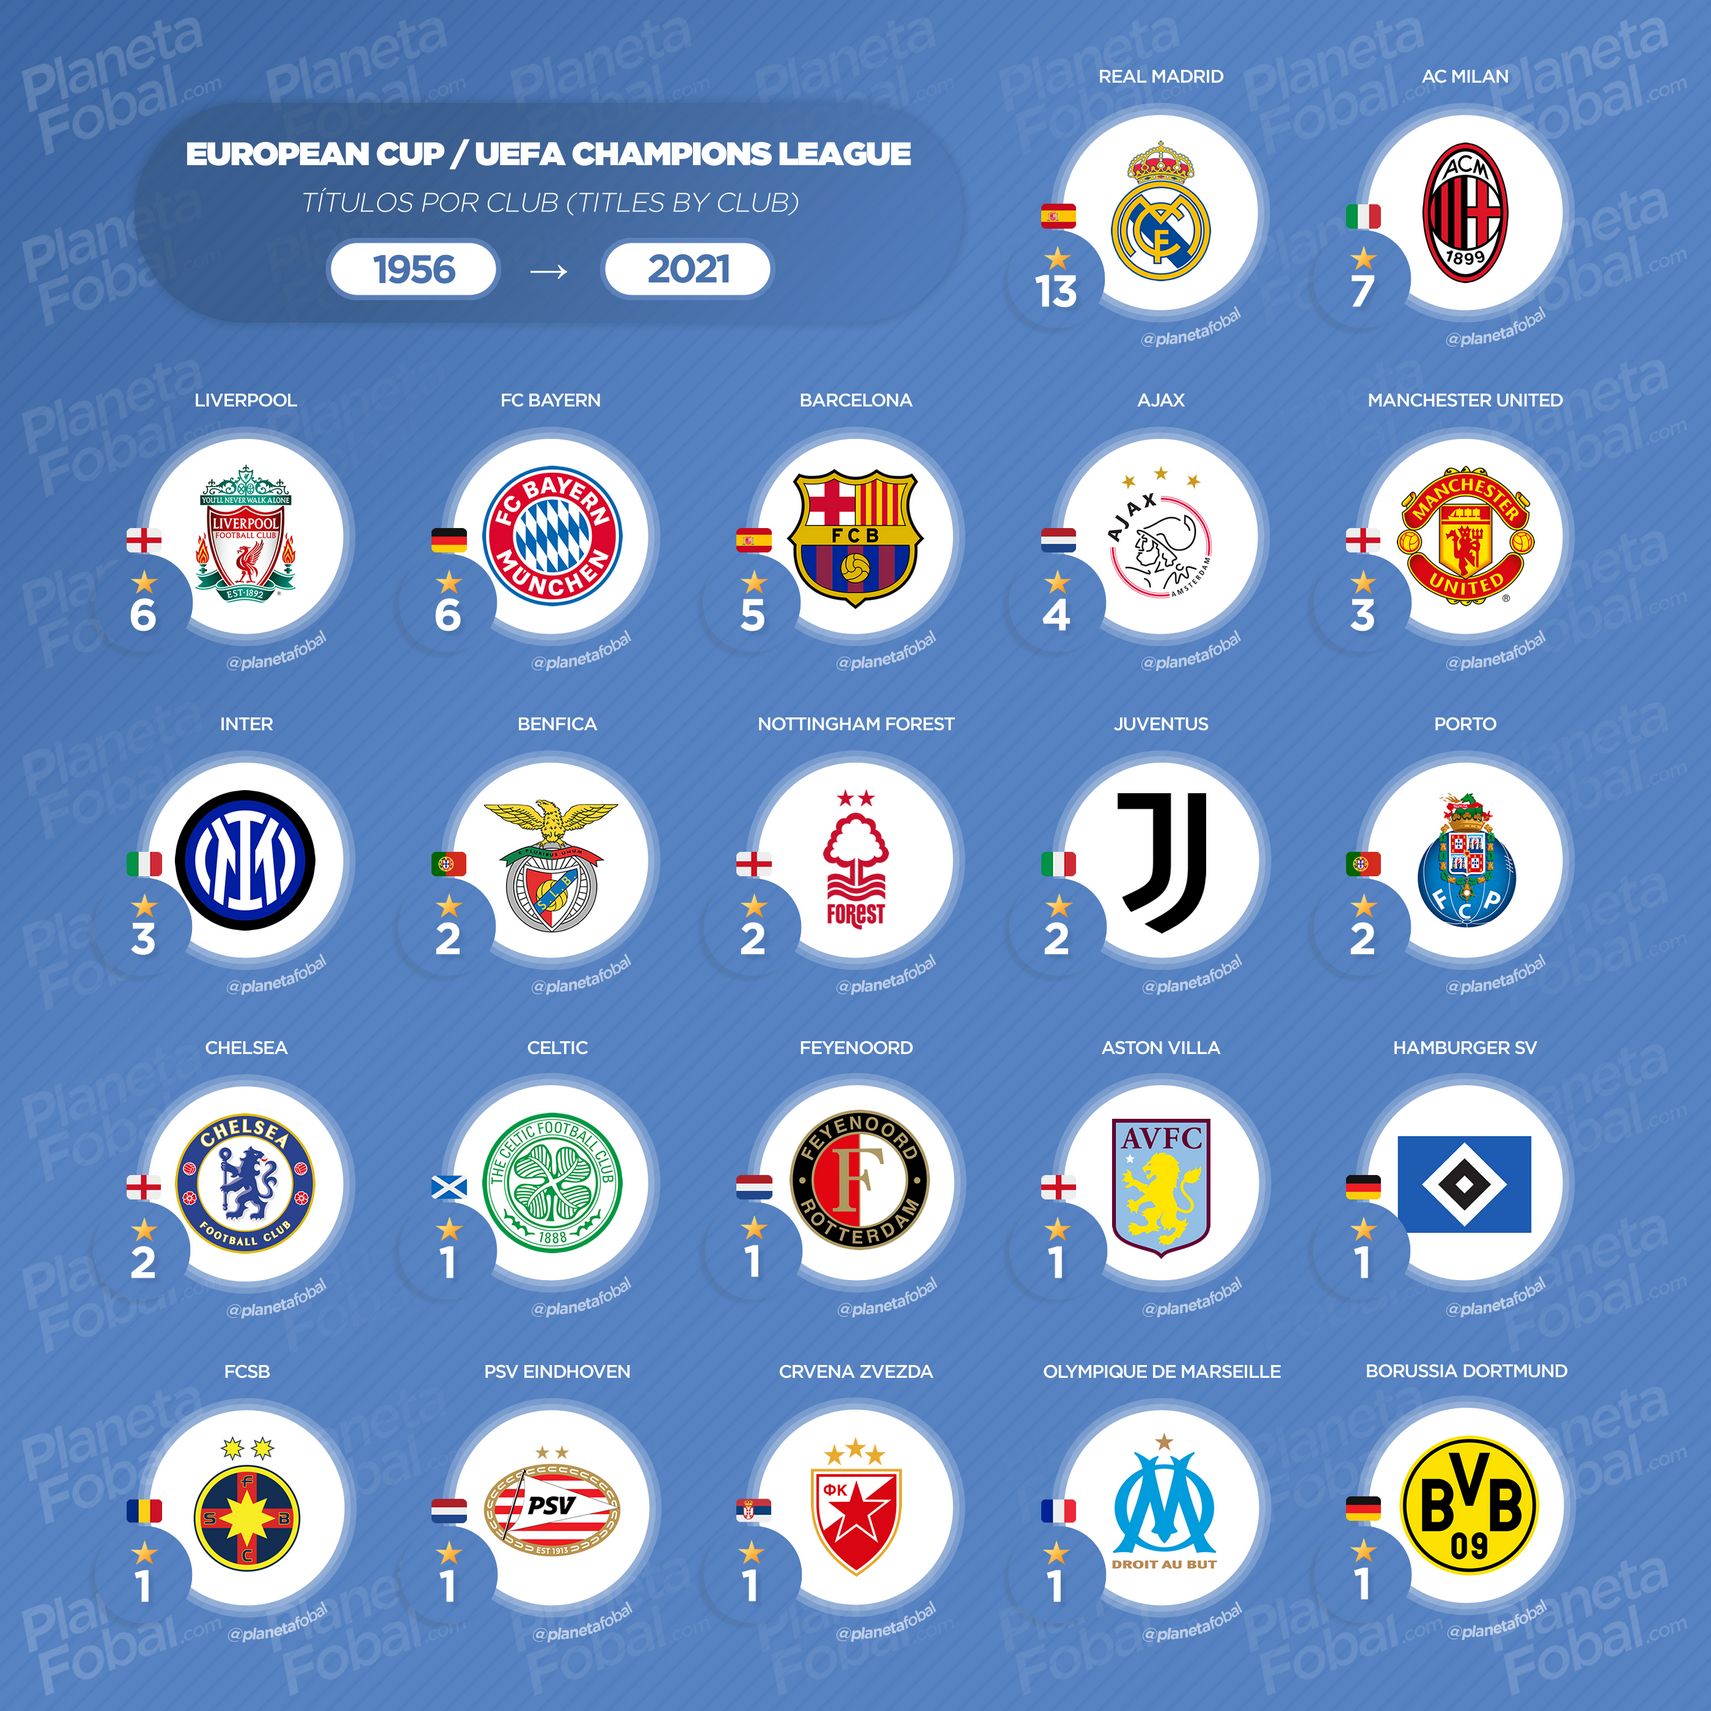 Títulos por clubes en la UEFA Champions League / Copa de Europa 1956-2021